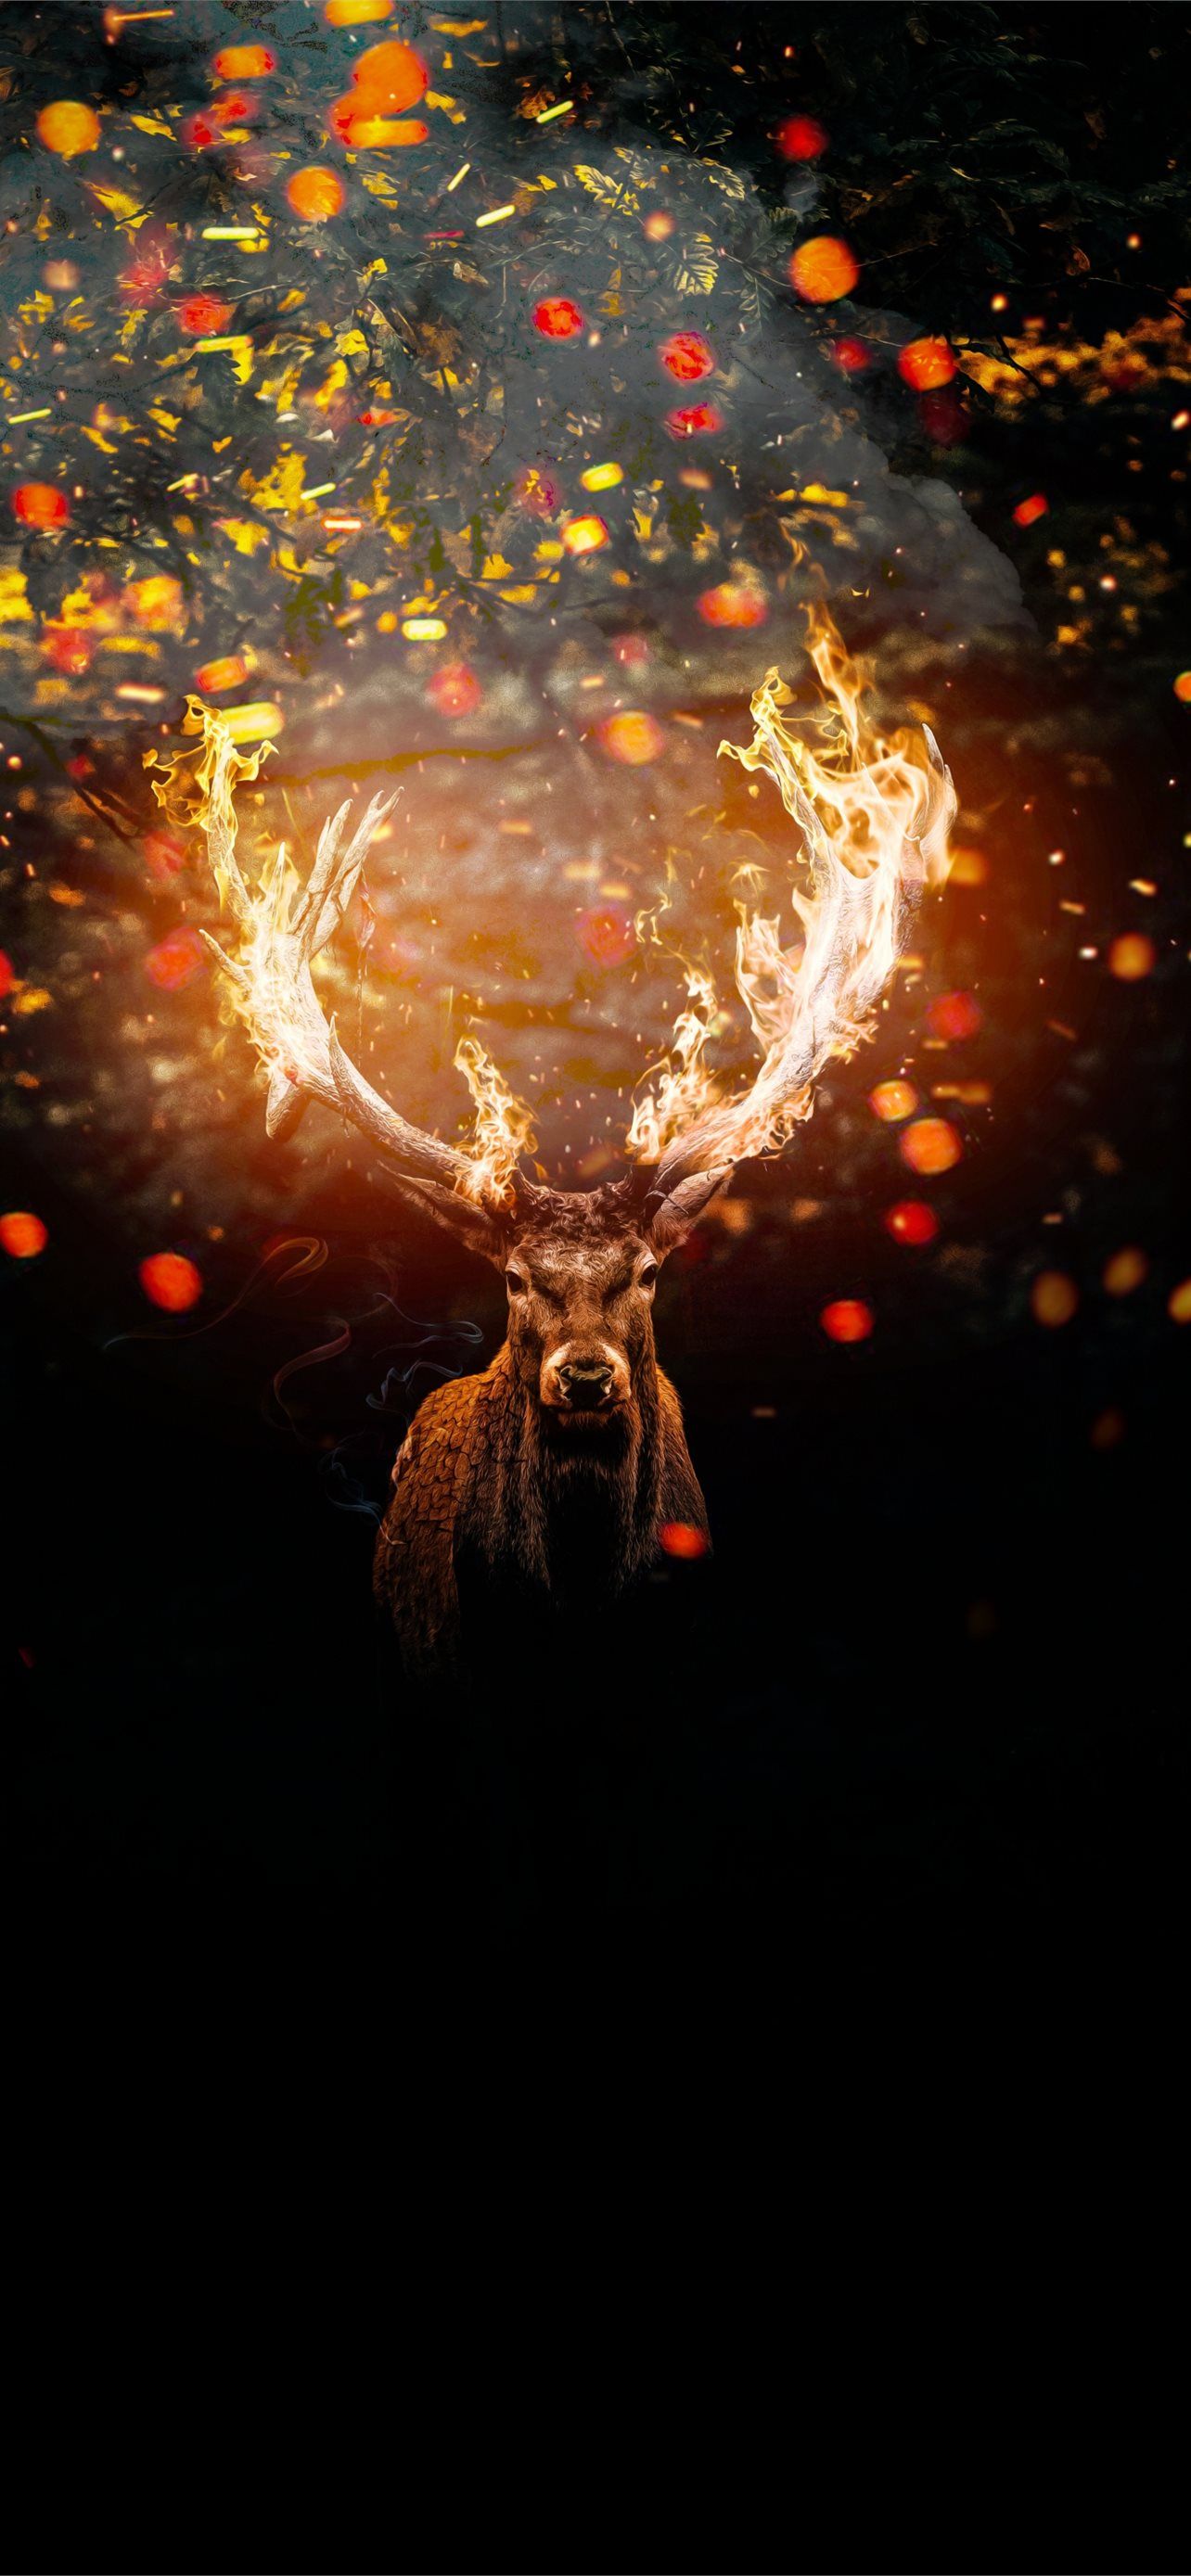 A deer with firey antlers - Deer